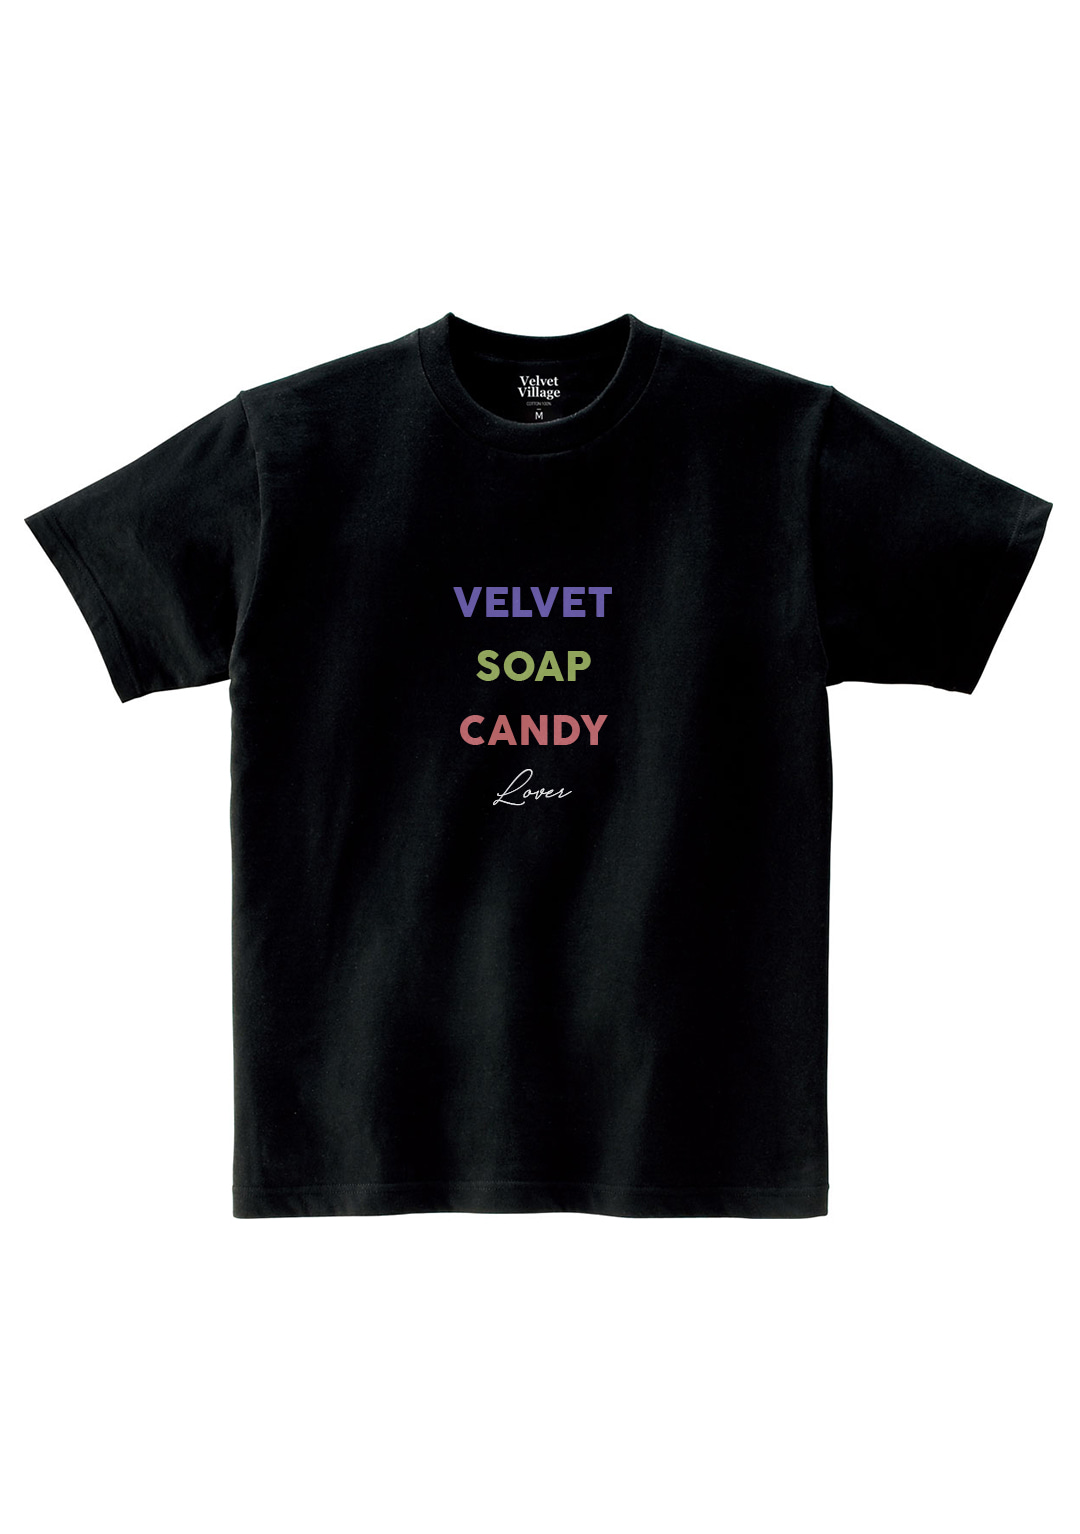 Velvet soap candy T-shirt (Black)